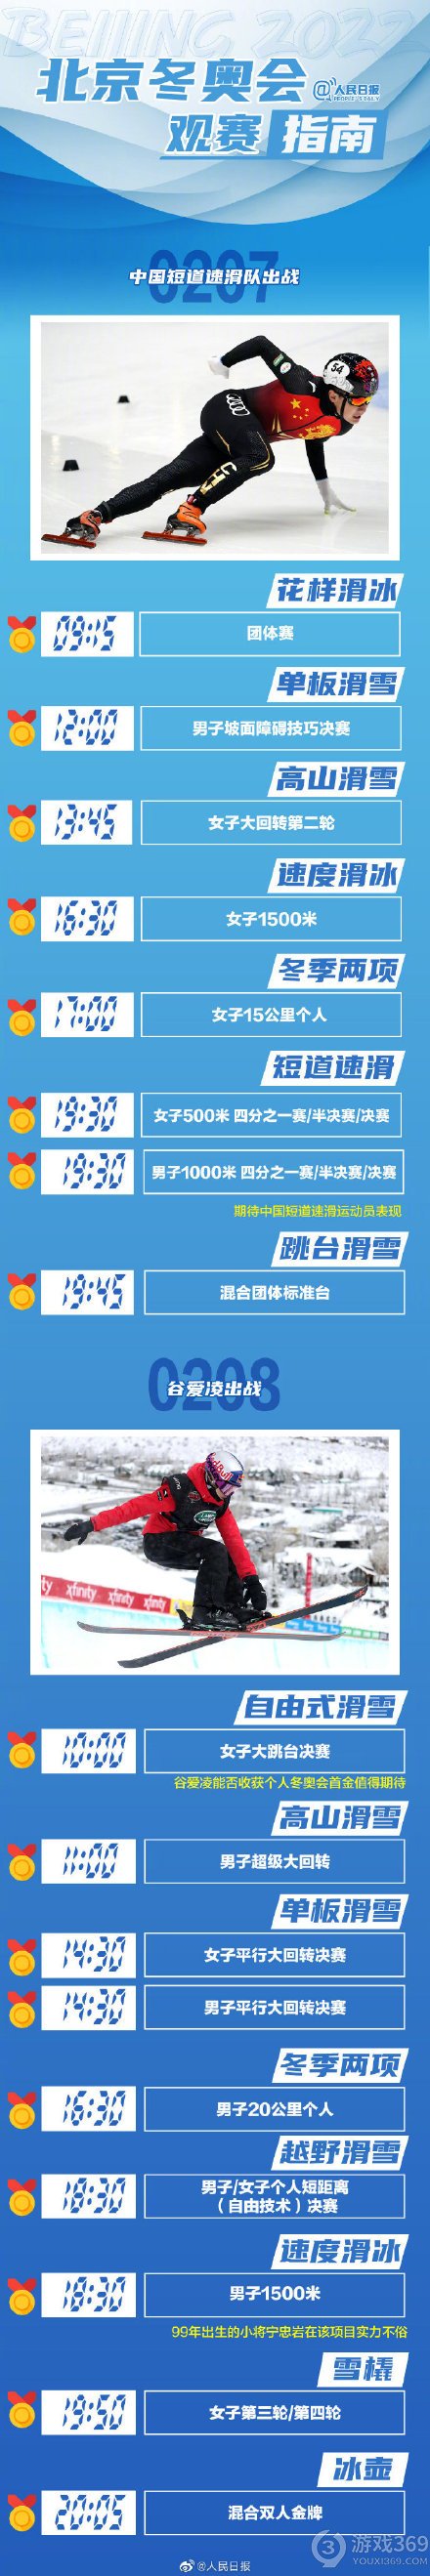 北京2022年冬奥会赛程介绍 2022年北京冬奥会金牌赛事指南